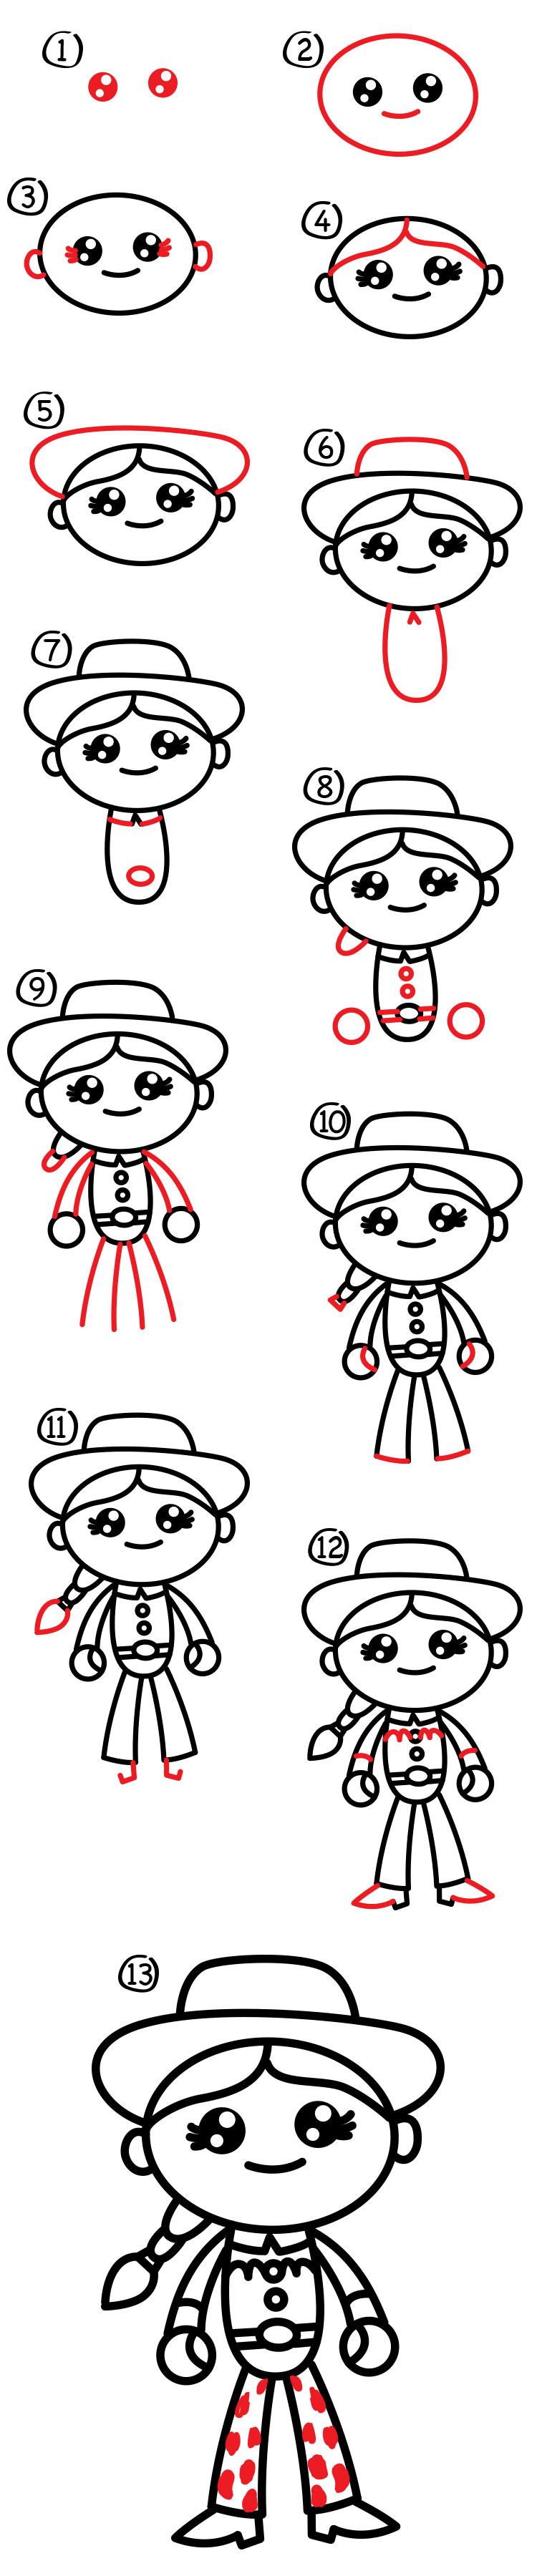 How To Draw Cartoon Jessie From Toy Story